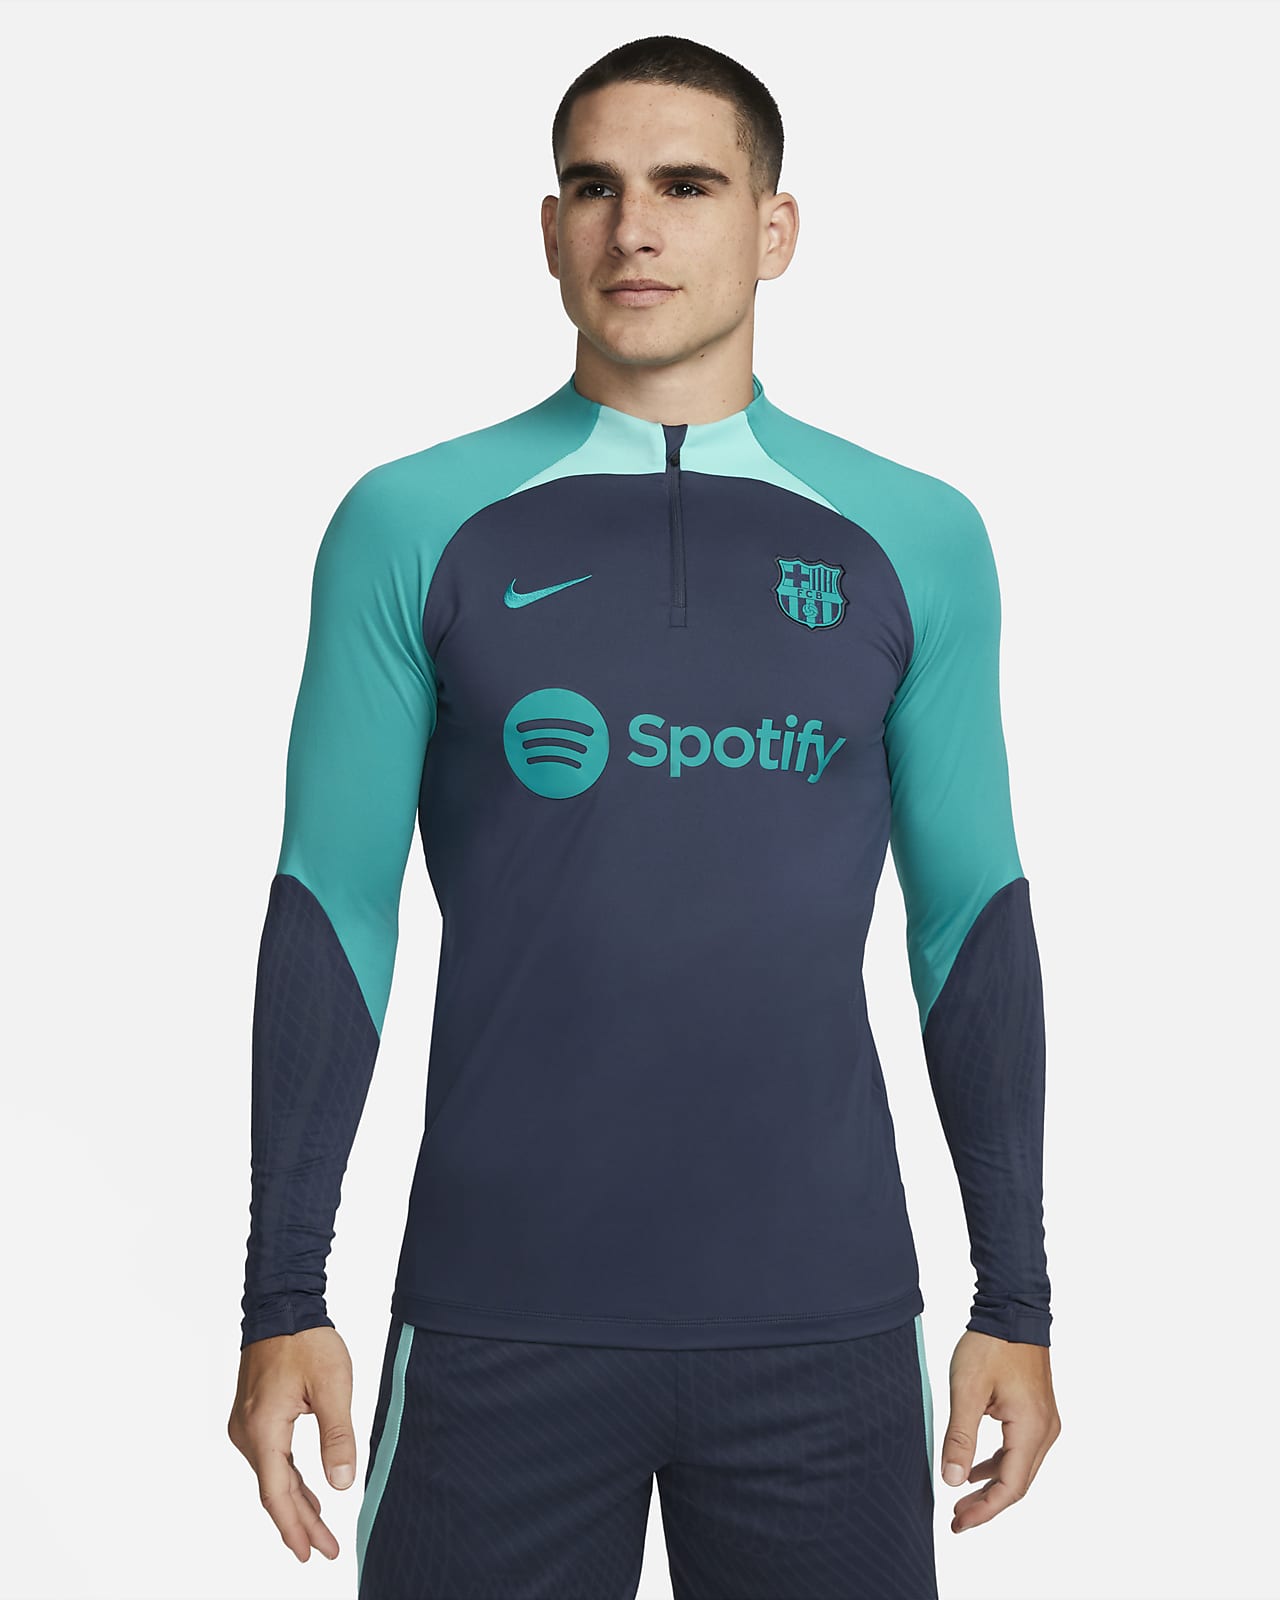 Ανδρική πλεκτή ποδοσφαιρική μπλούζα προπόνησης Nike Dri-FIT Μπαρτσελόνα Strike